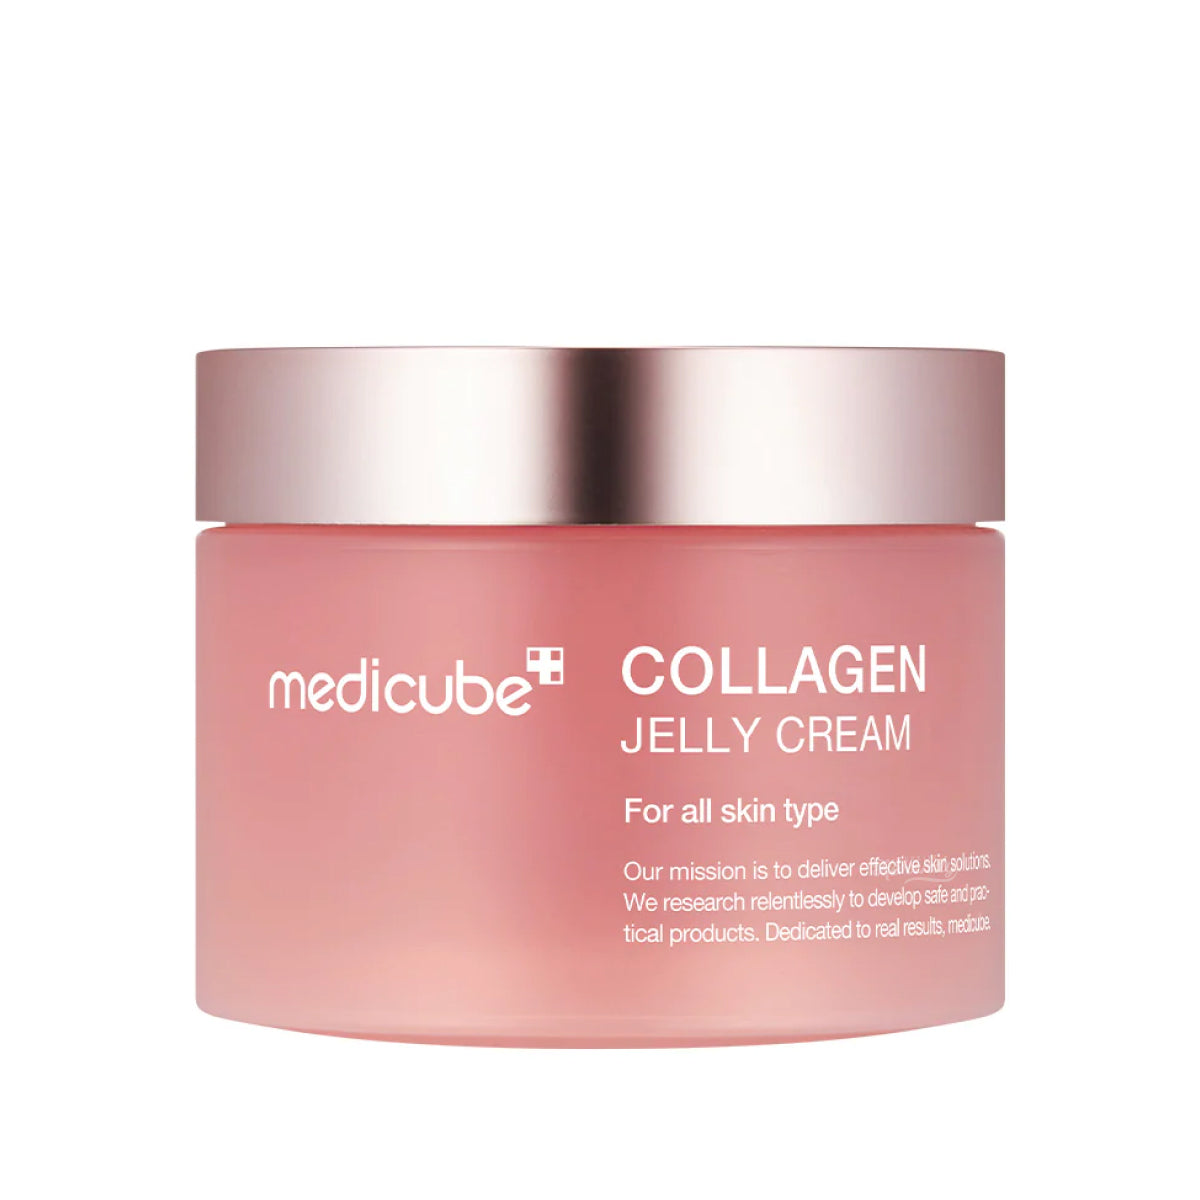 Medicube - Collagen Jelly Cream (Cilt Parlaklığını Arttırıcı ve Elastikiyet Koruyucu Hidrolize Kolajenli Jel Krem) 110ml (%25 Tanıtım indirimli)